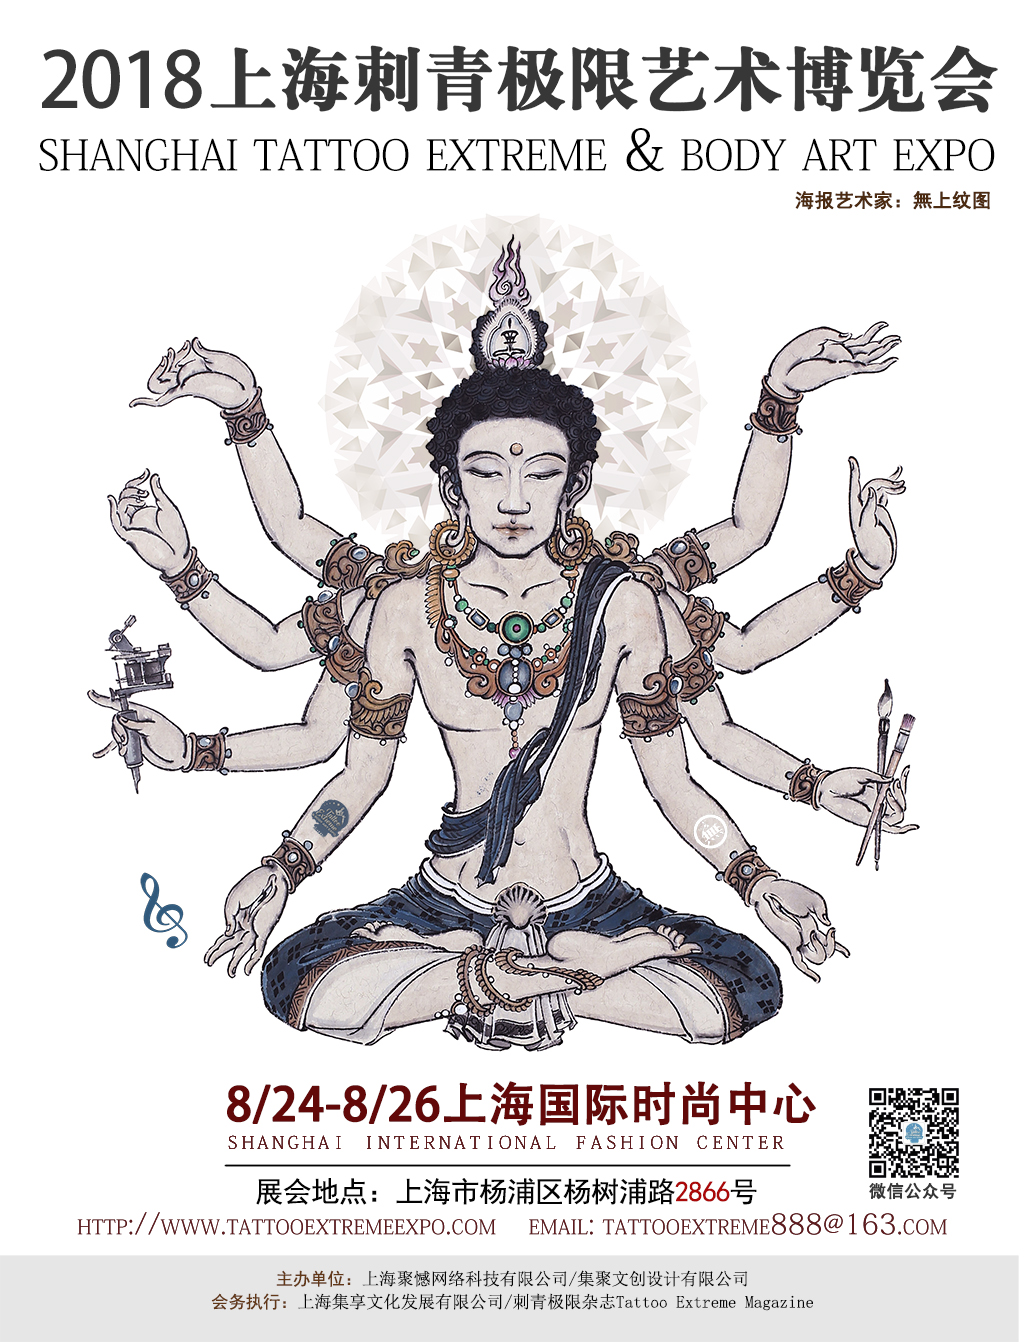 2018上海刺青极限艺术博览会